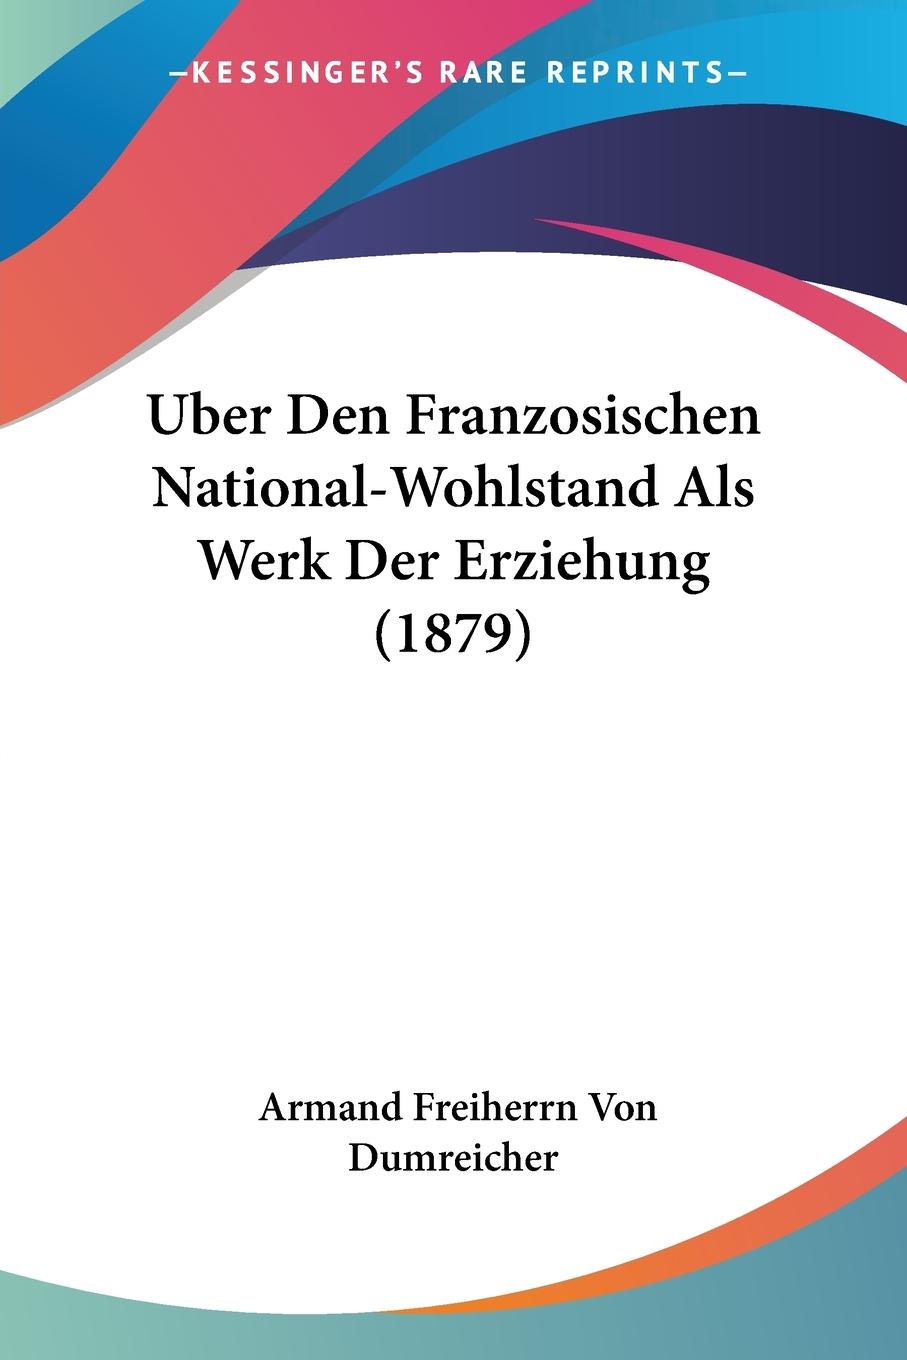 Uber Den Franzosischen National-Wohlstand Als Werk Der Erziehung (1879) - Dumreicher, Armand Freiherrn Von